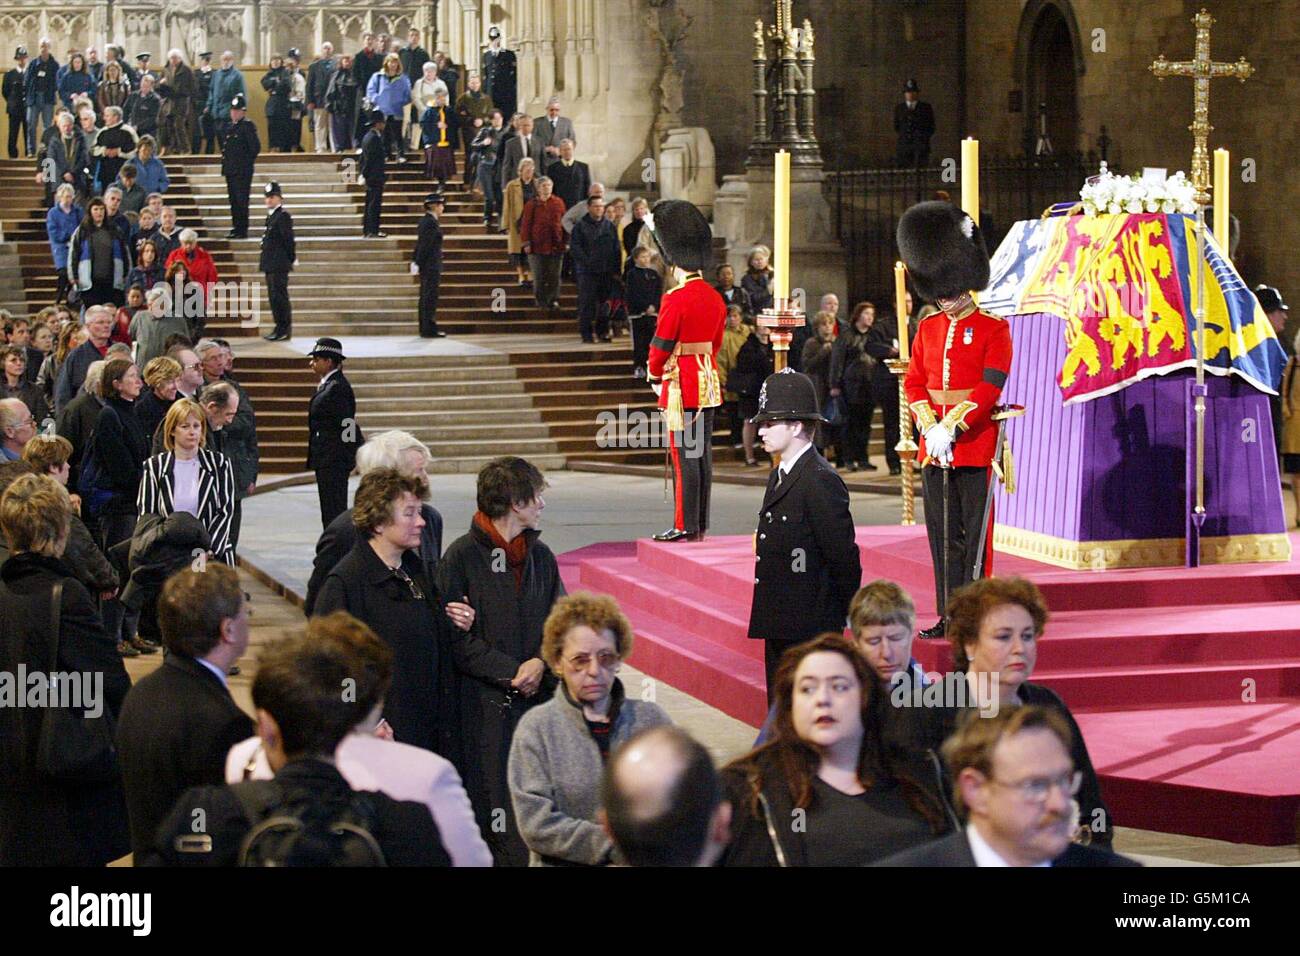 Wachbeamte bewachen den Sarg von Königin Elizabeth, der Königin-Mutter, die im Staat in der Westminster Hall liegt, während Mitglieder der Öffentlichkeit ihre letzte Ehre erweisen, vor ihrer Beerdigung in der Westminster Abbey. Stockfoto